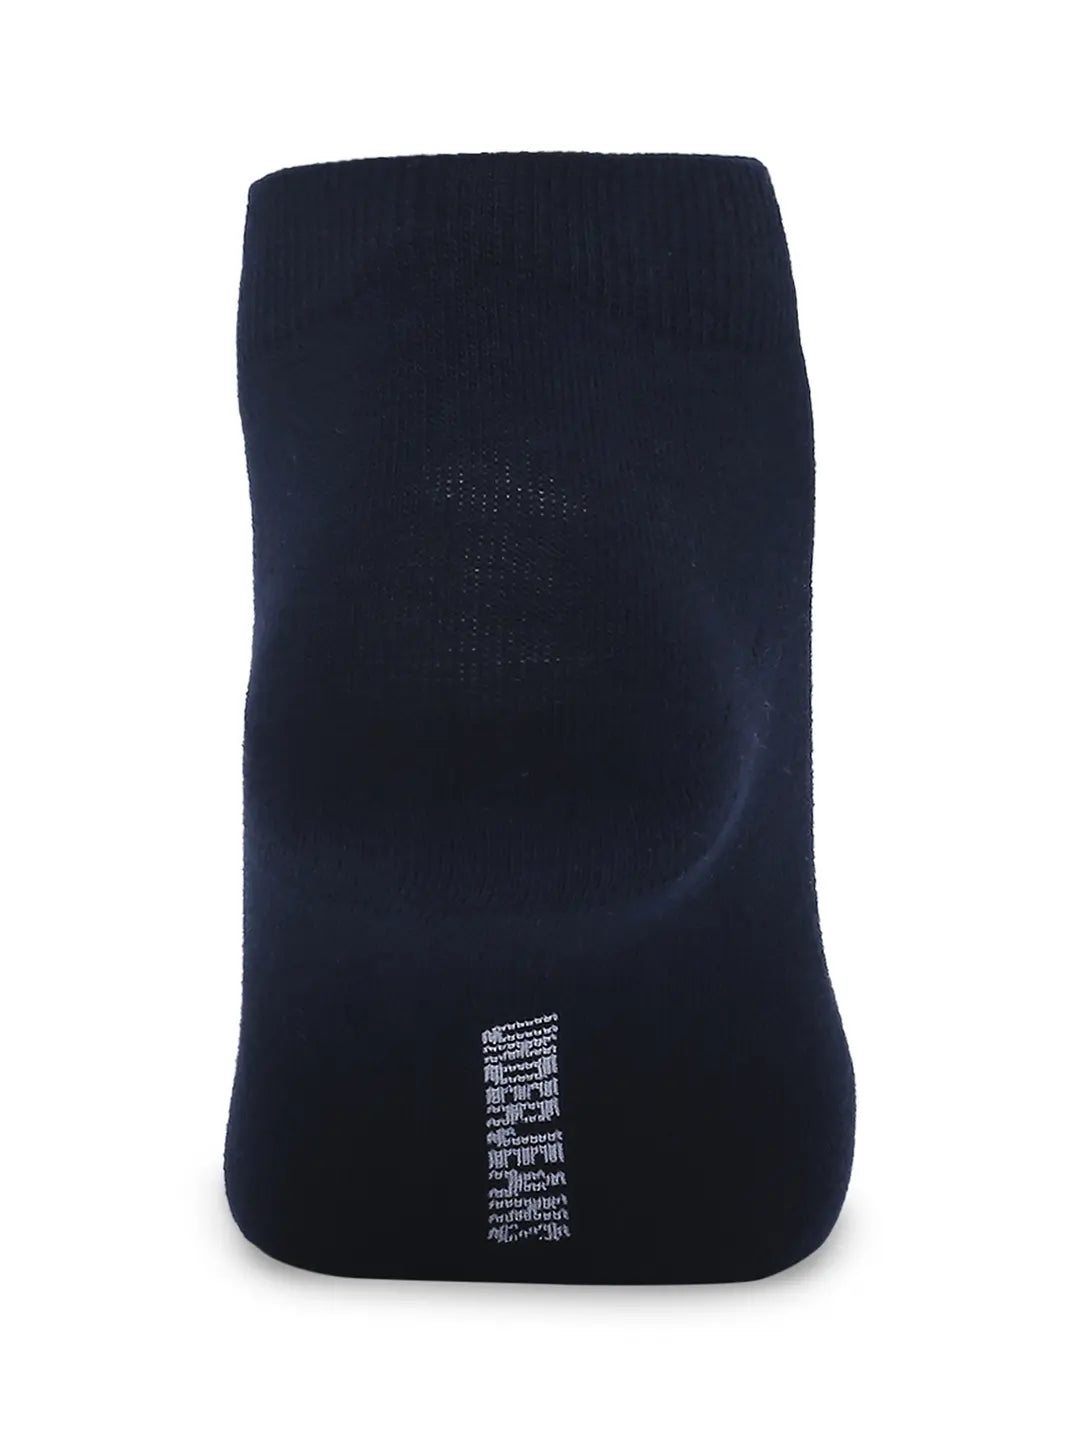 Men White & Navy Cotton Blend Sneaker Socks - Pack Of 2 - Underjeans by Spykar